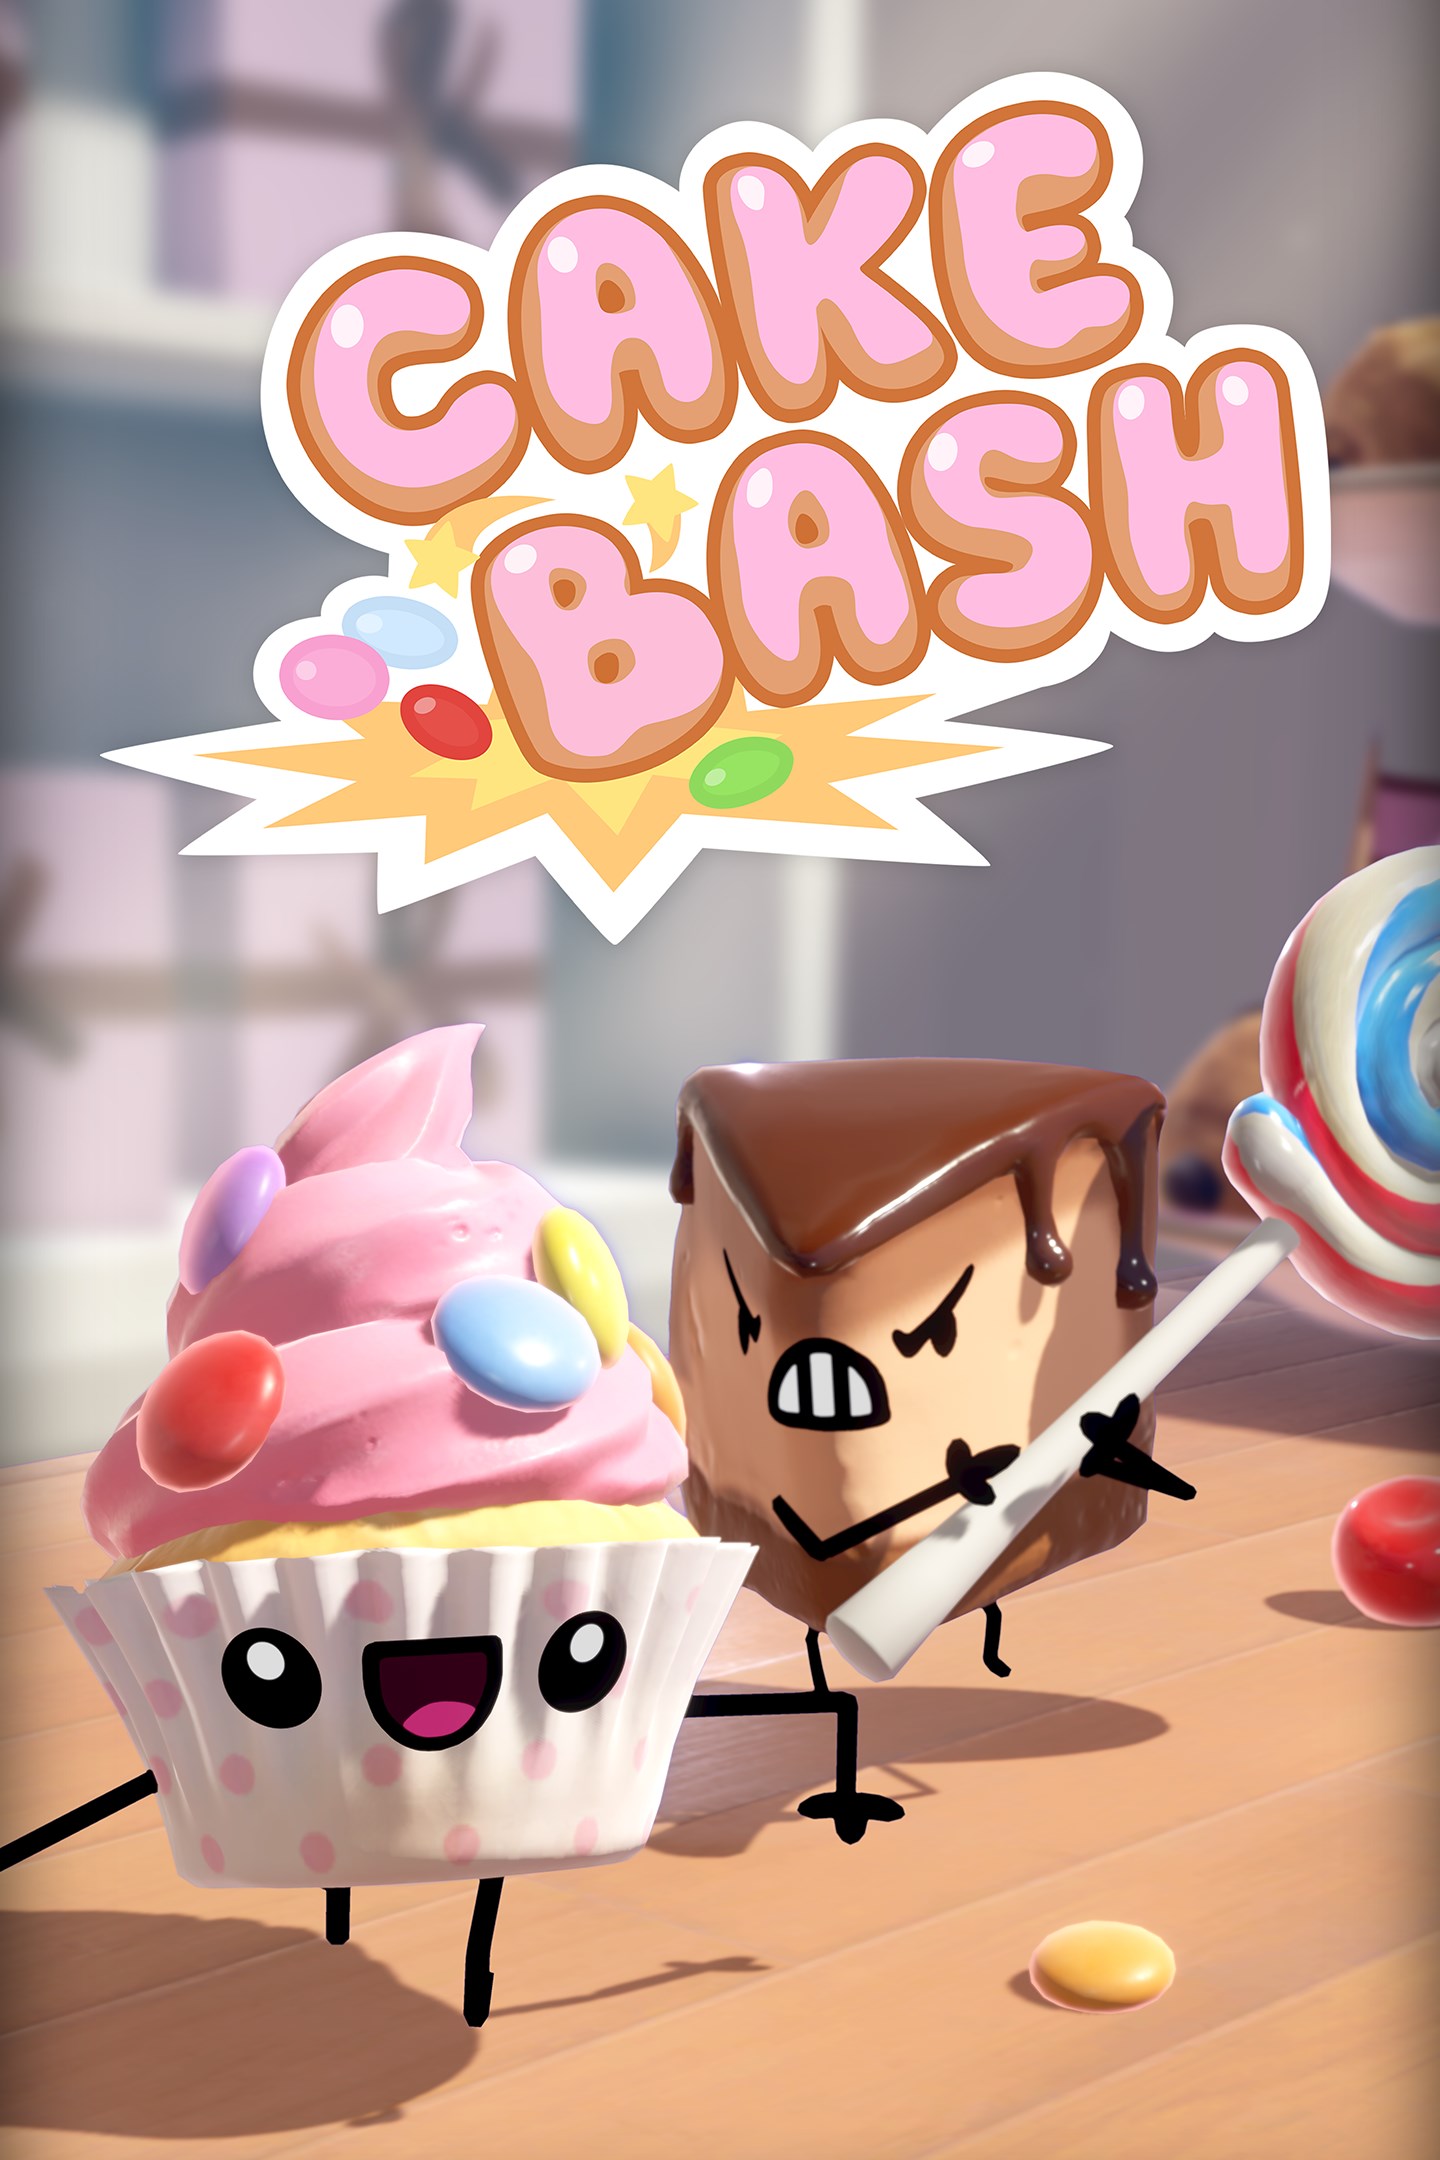 Poznaj ciastka z Cake Bash, które pojawią się na Xbox One 15 października